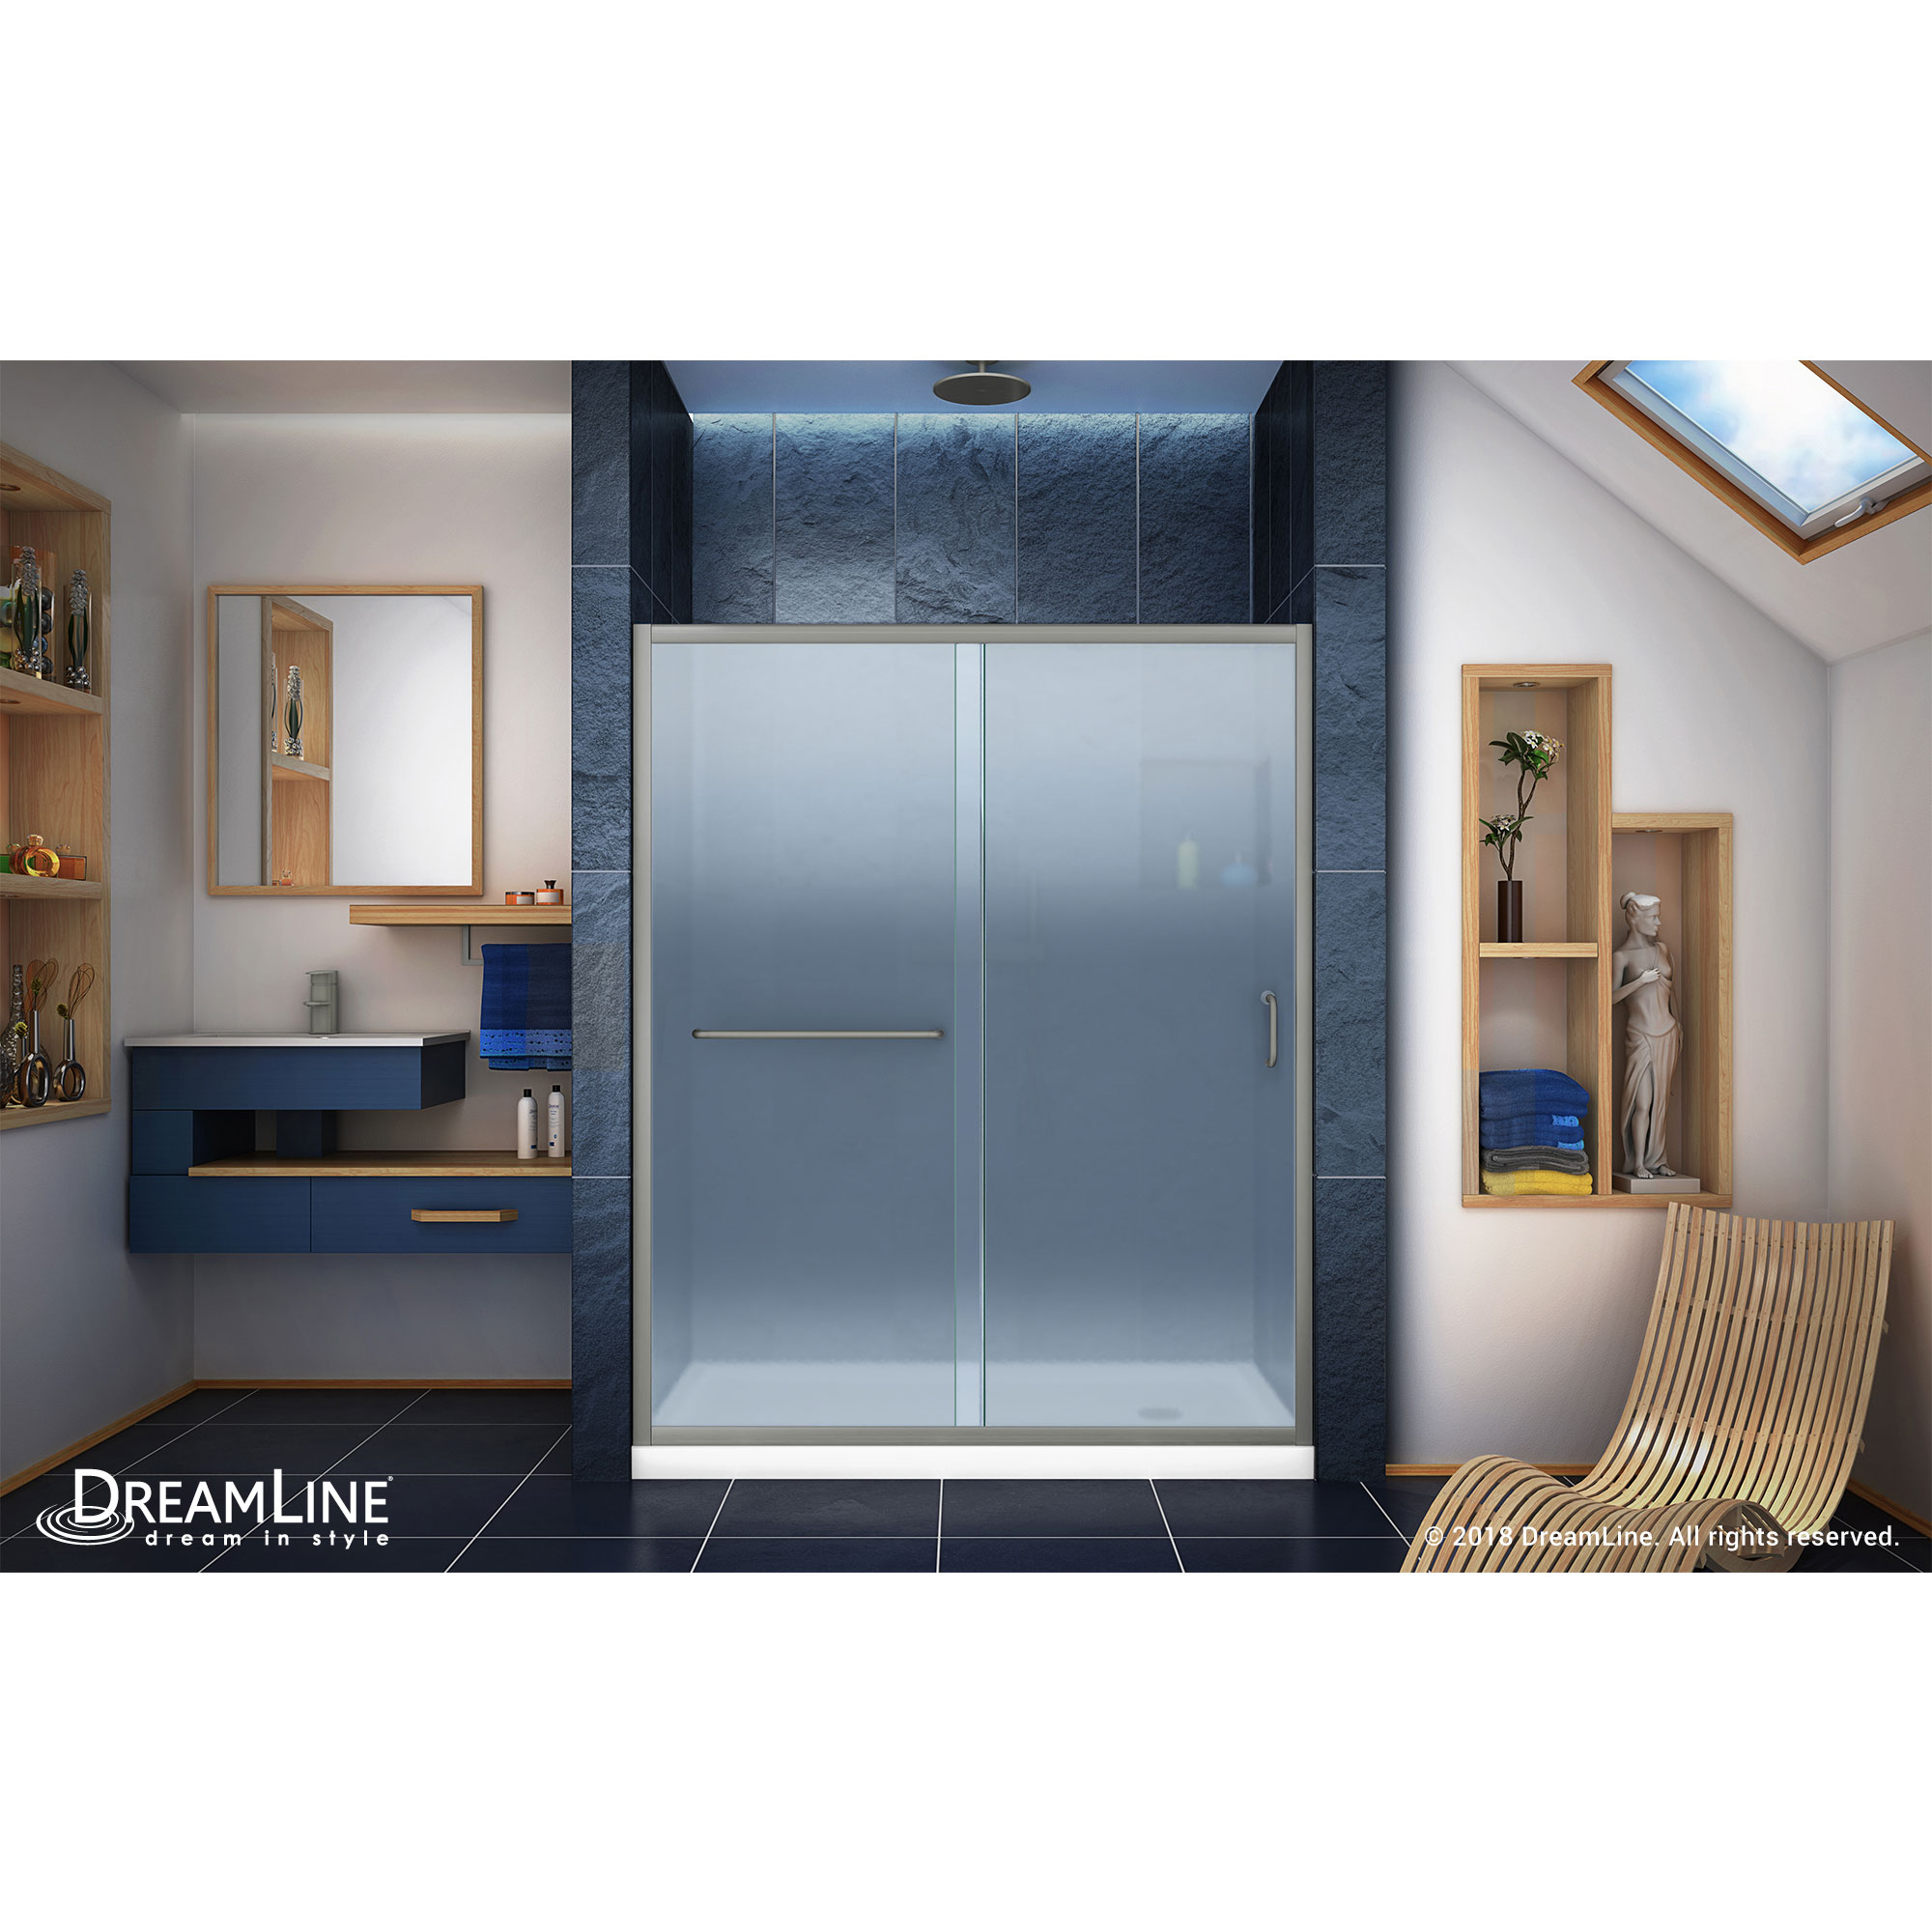 Infinity-Z Frameless Sliding Shower Door & SlimLine 30" by 60" Shower Base